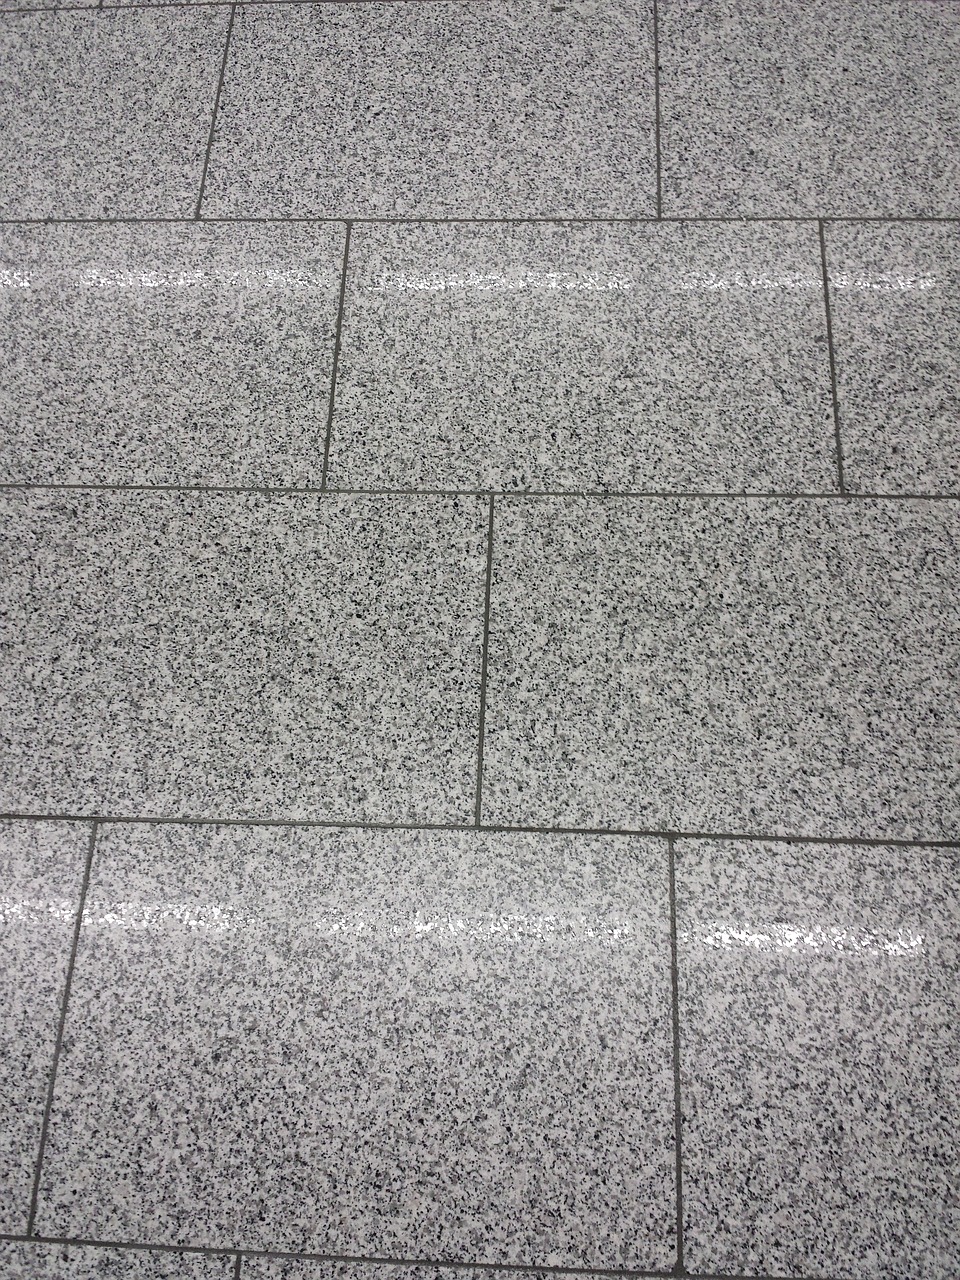 floor tiles, tiles, floor-338155.jpg